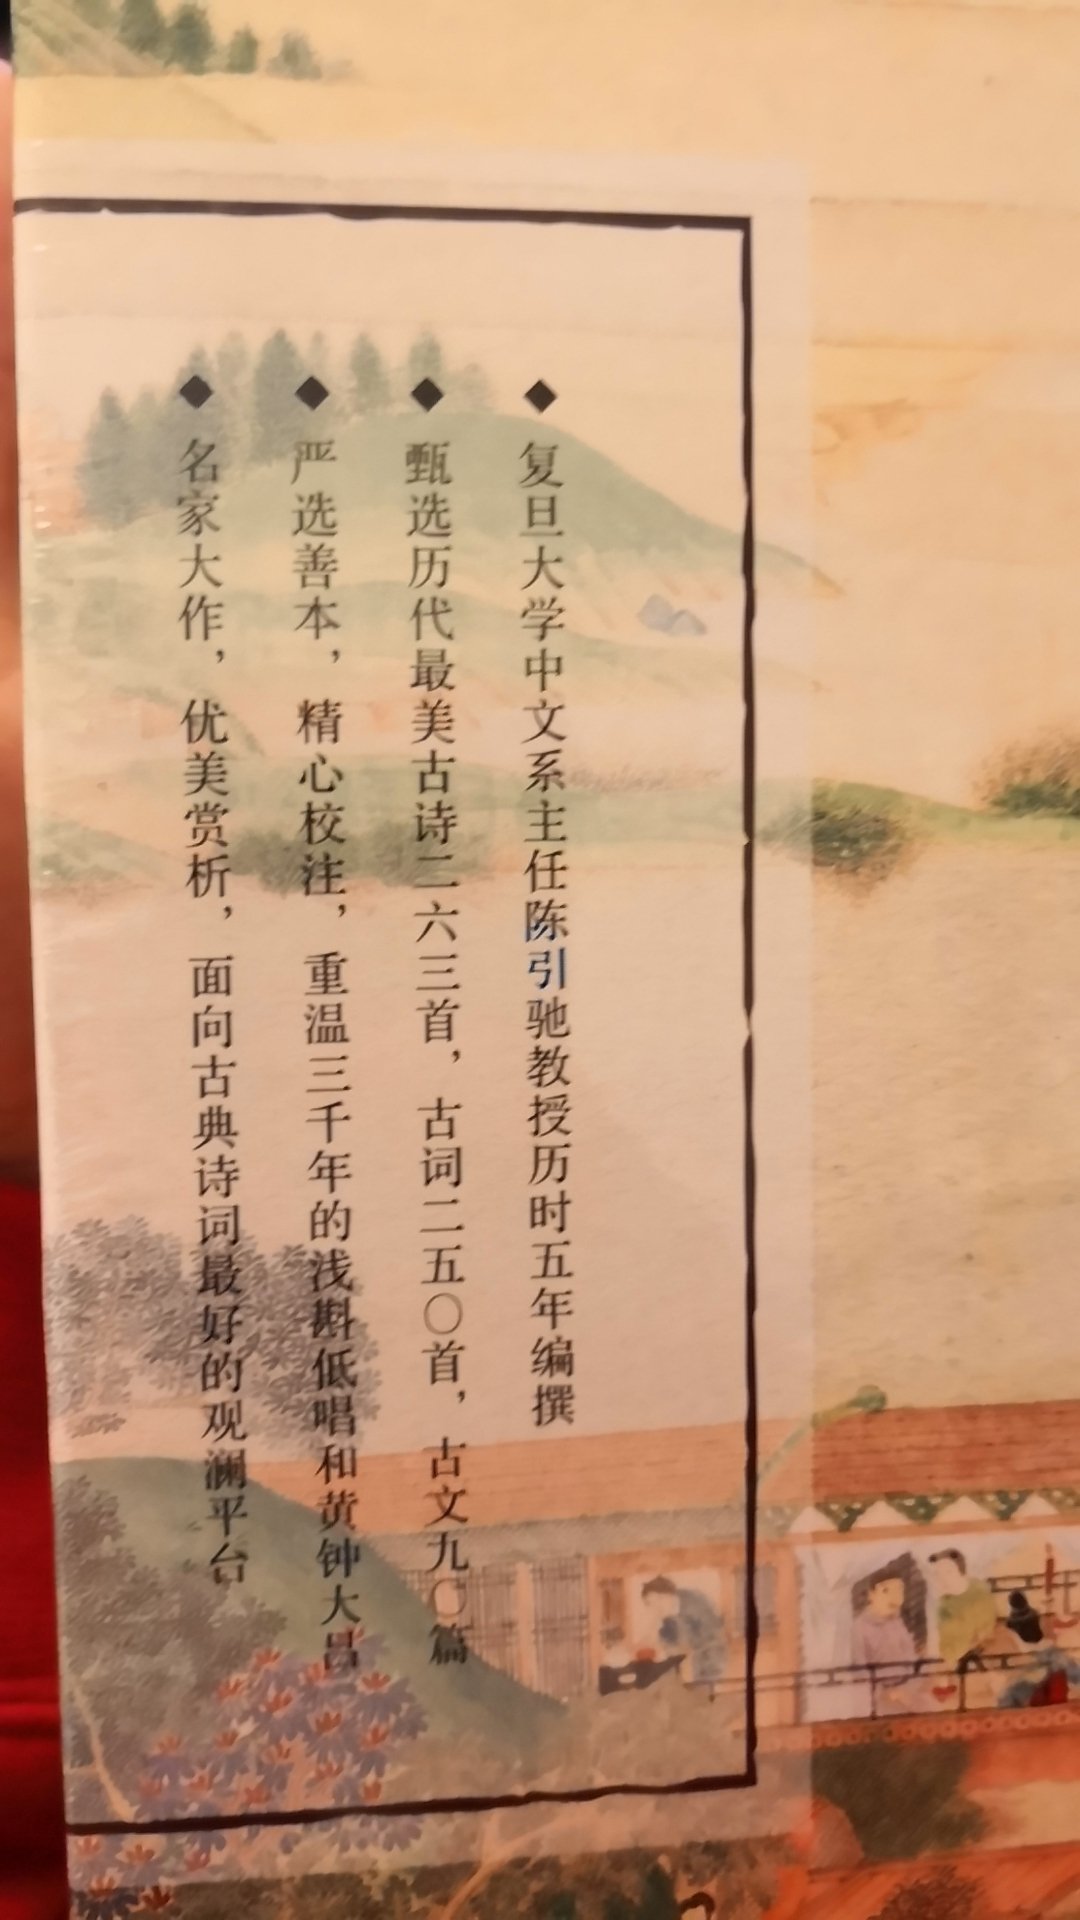 中国古诗词之美要从懂事儿的中小学开始欣赏，同时可以配合课堂教学一起把传统文化的传承下去！书籍不错包装用心，内容精炼！